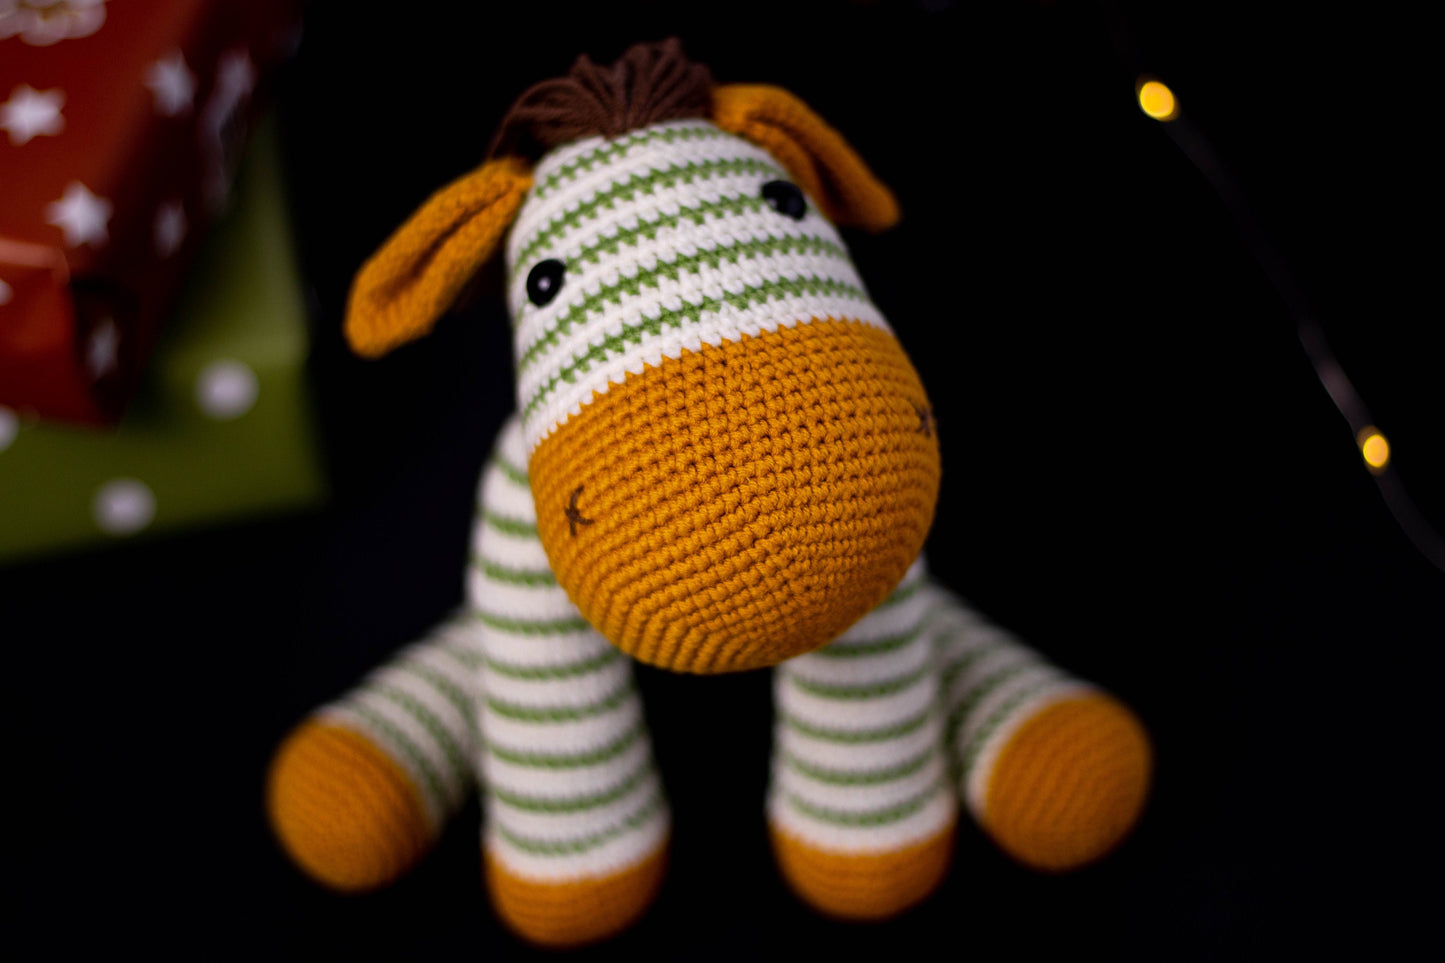 Crochet Zebra Doll, Amigurumi Zebra Toy